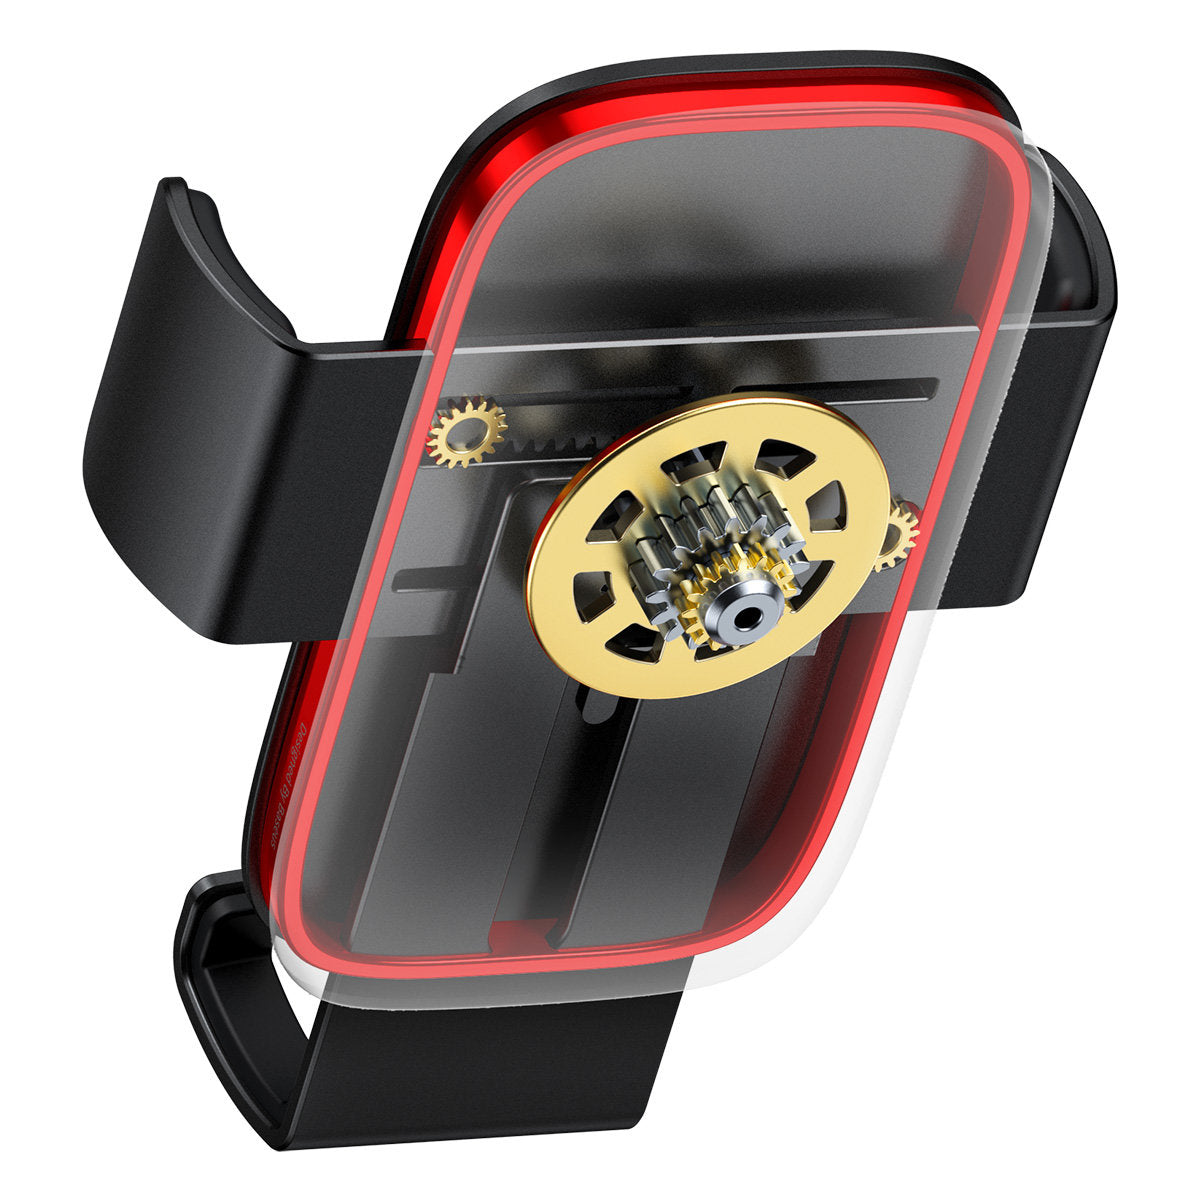 Baseus Metal Age II gravitational car phone holder for ventilation grille black (SUJS000001)